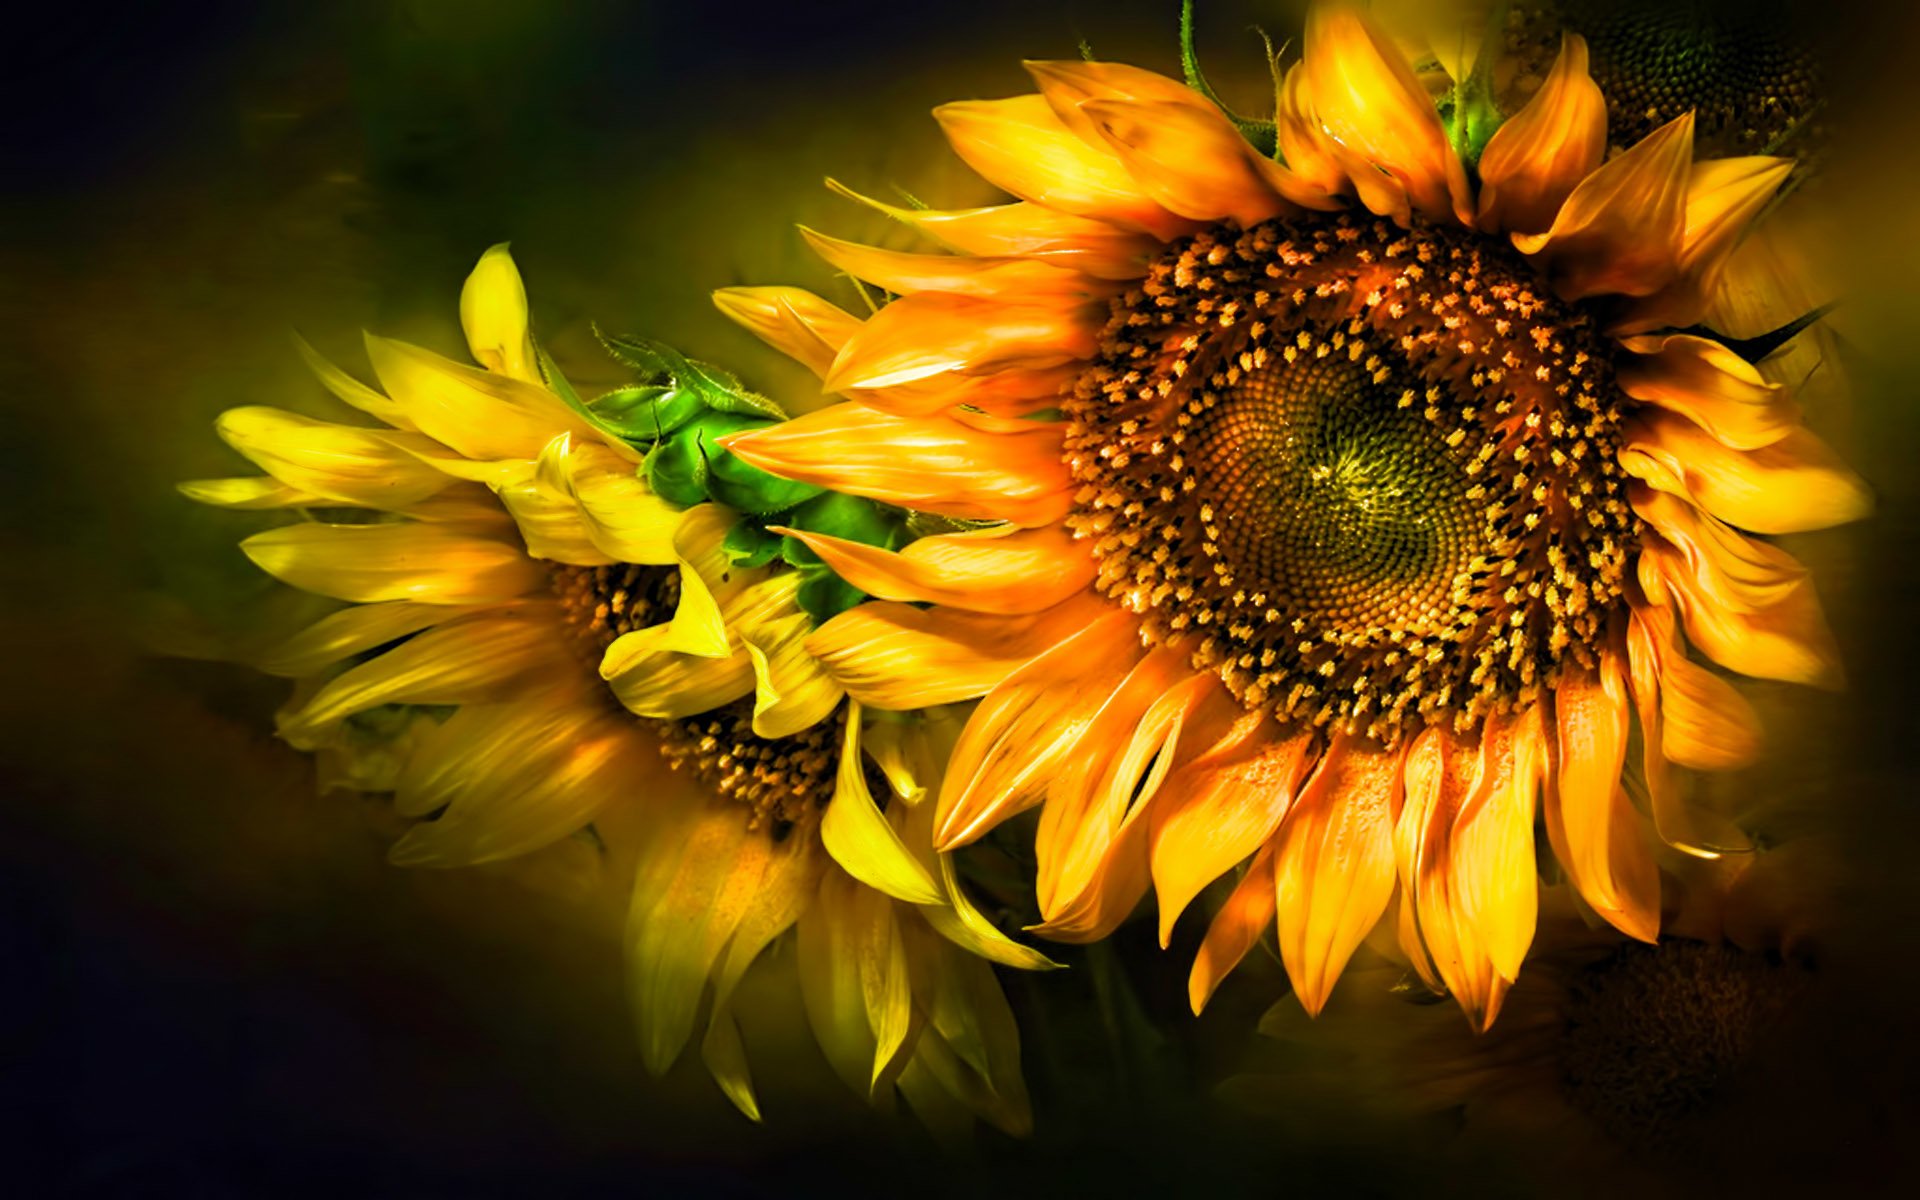 sonnenblume desktop hintergrund,sonnenblume,natur,blume,gelb,sonnenblume